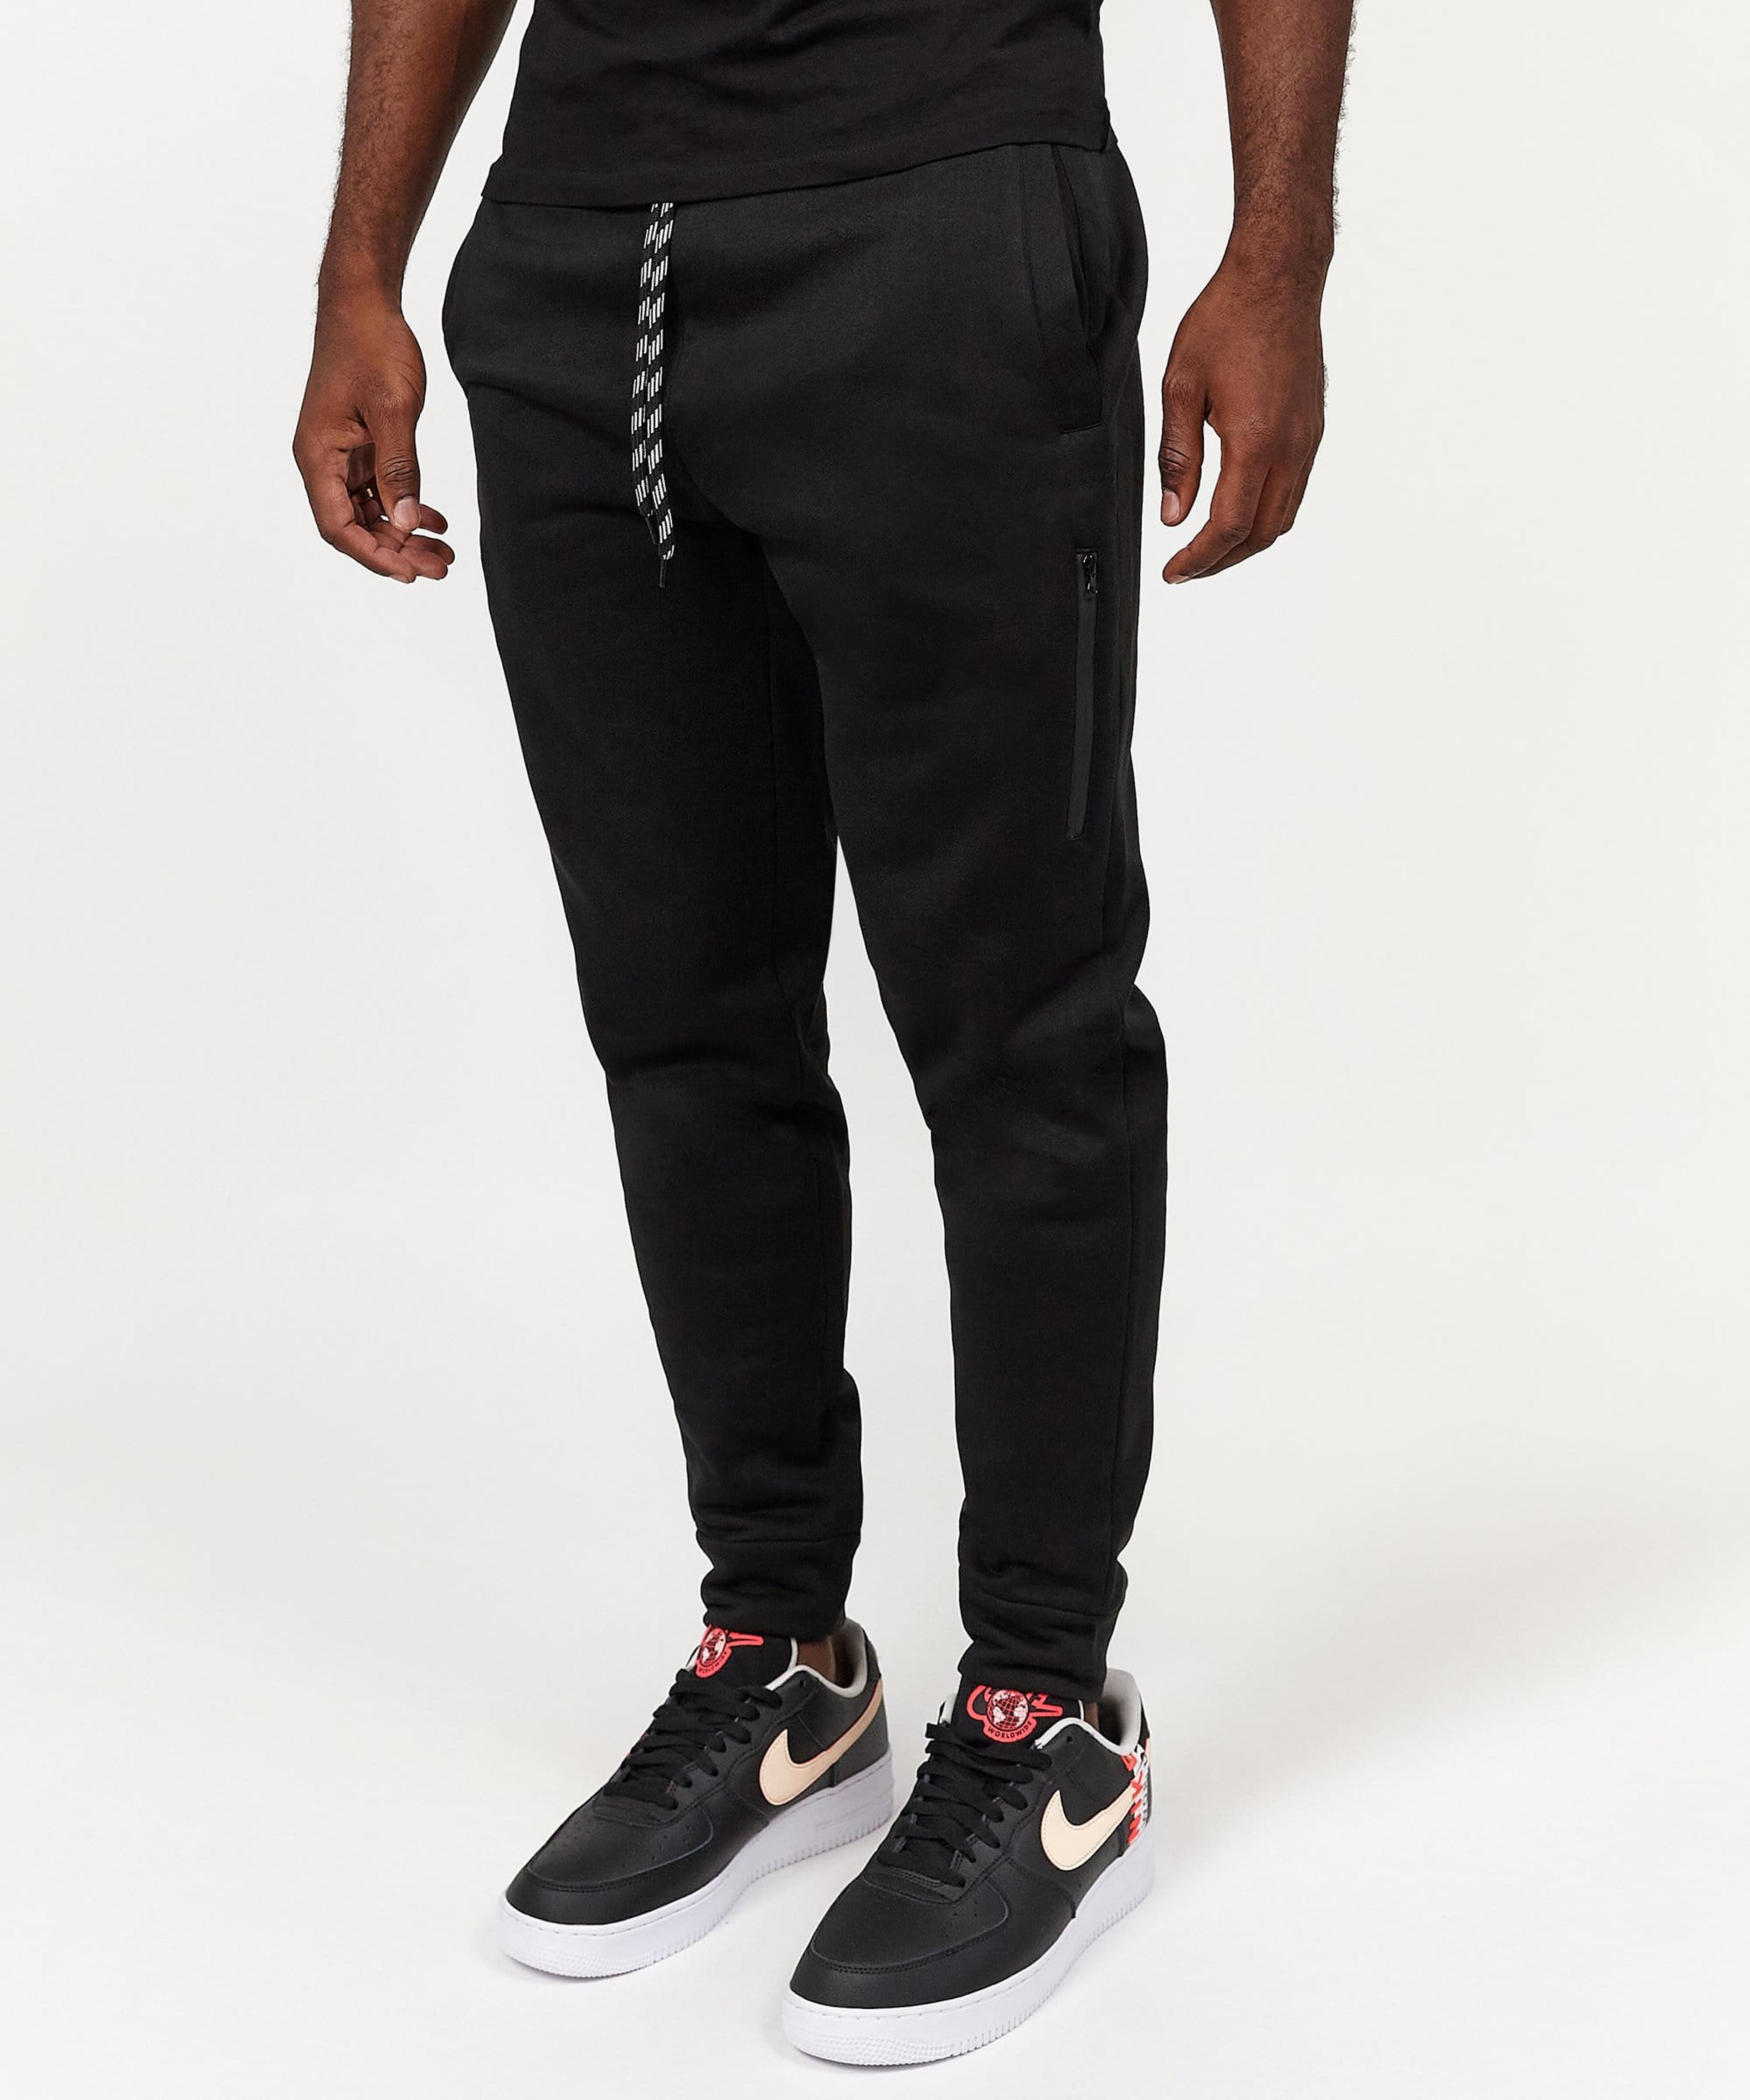 Jeff Slim Fit Black Jogger With Side Zip Pocket